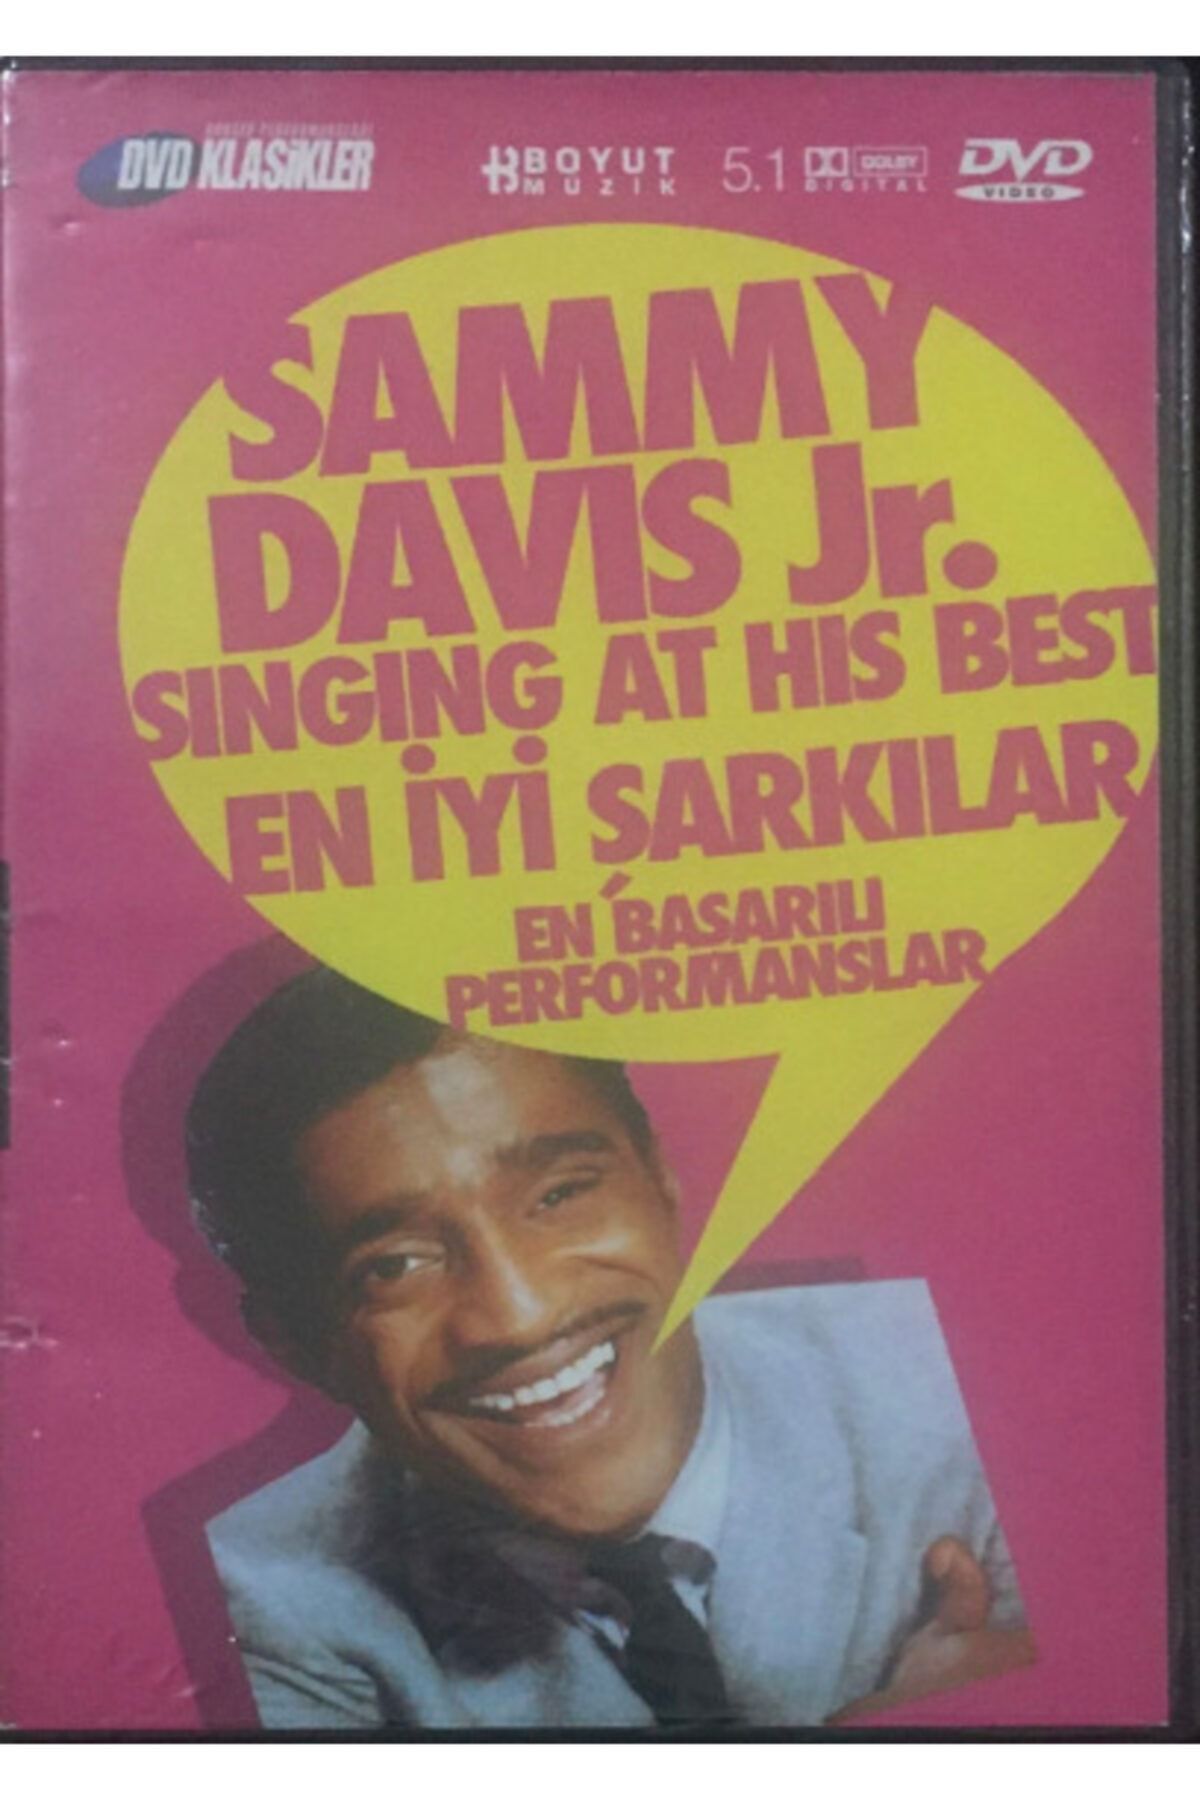 BOYUT YAYINLARI Sammy Davis Jr Singing At Hit Best / En Iyi Şarkılar En Başarılı Performanslar